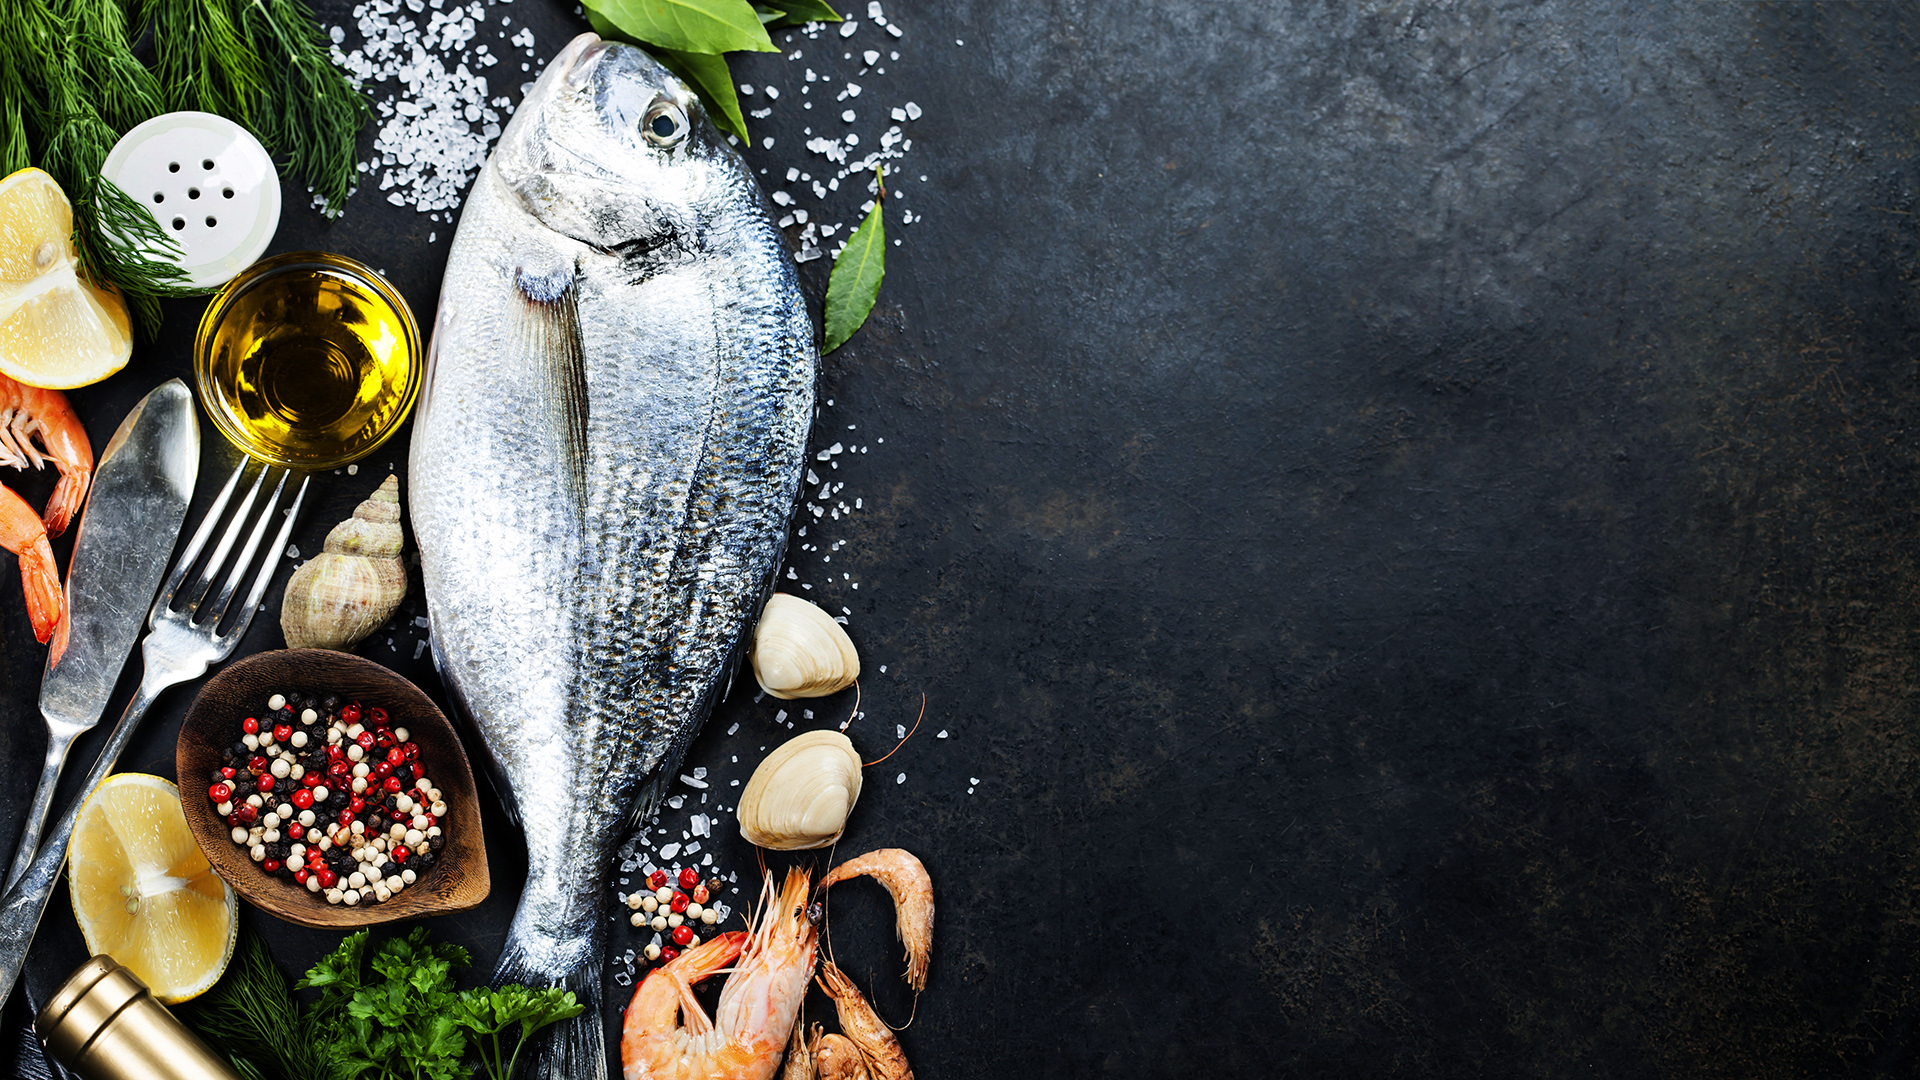 El pescado es un alimento de mar, altamente rico y nutritivo (Shutterstock)